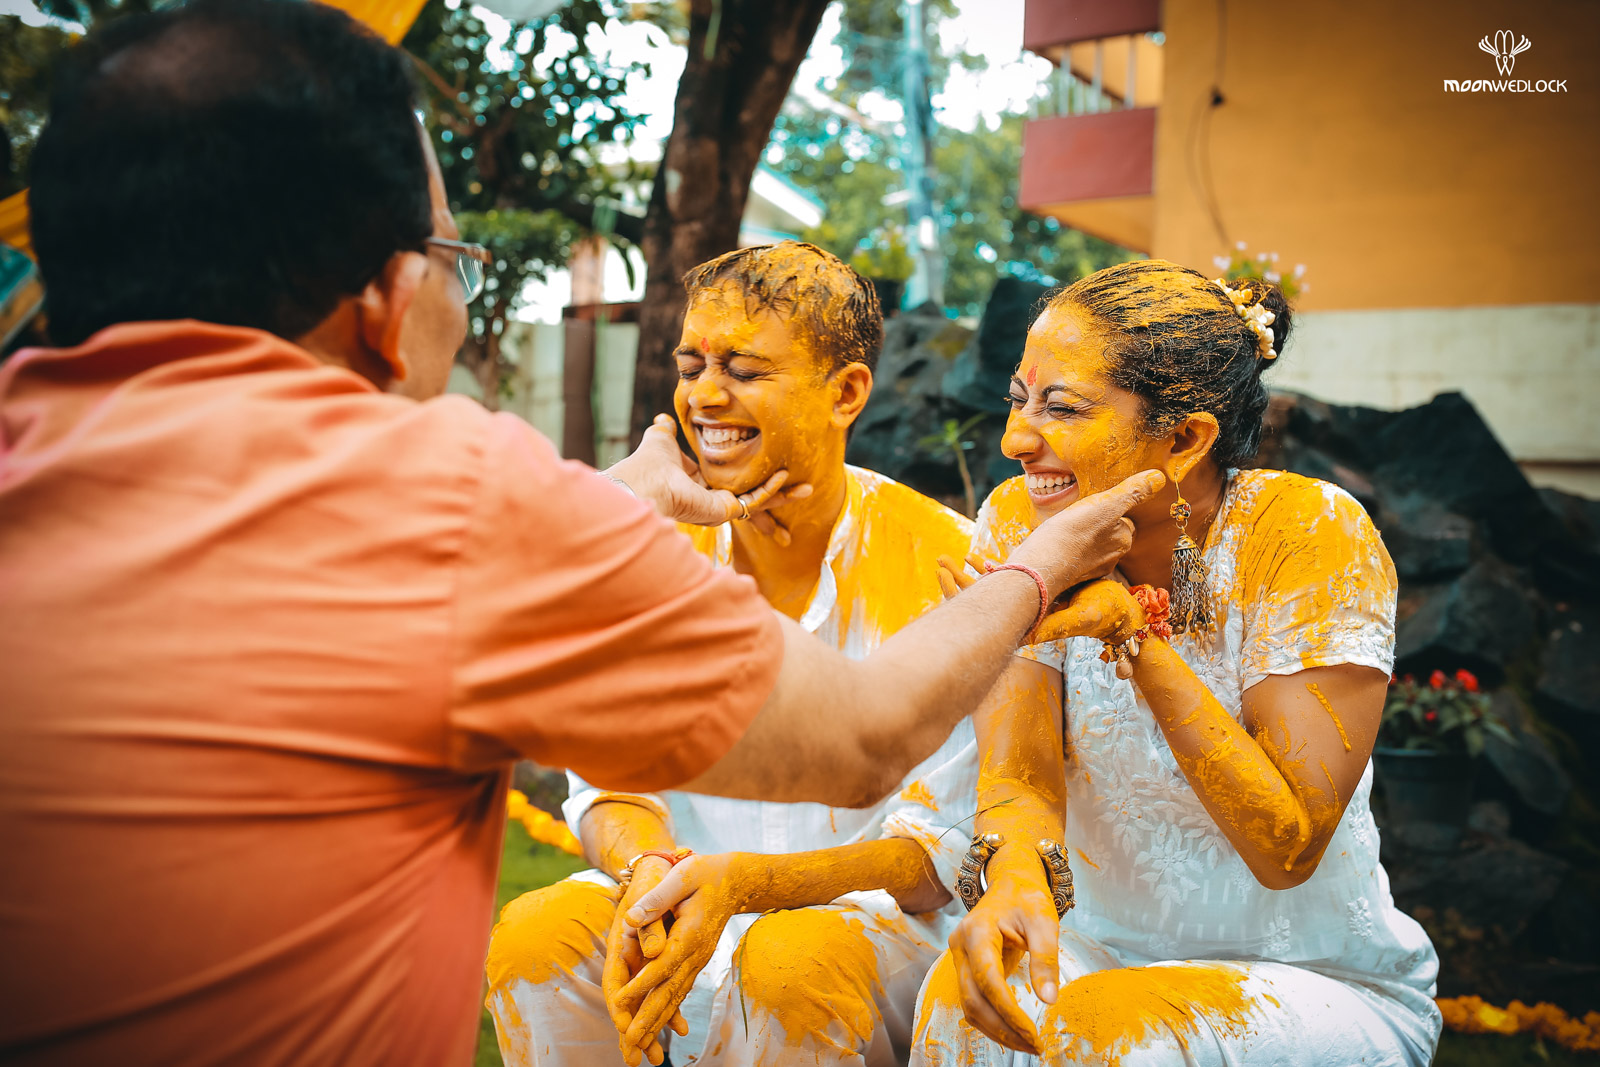 bangalore-wedding-photographers-moonwedlock (14)